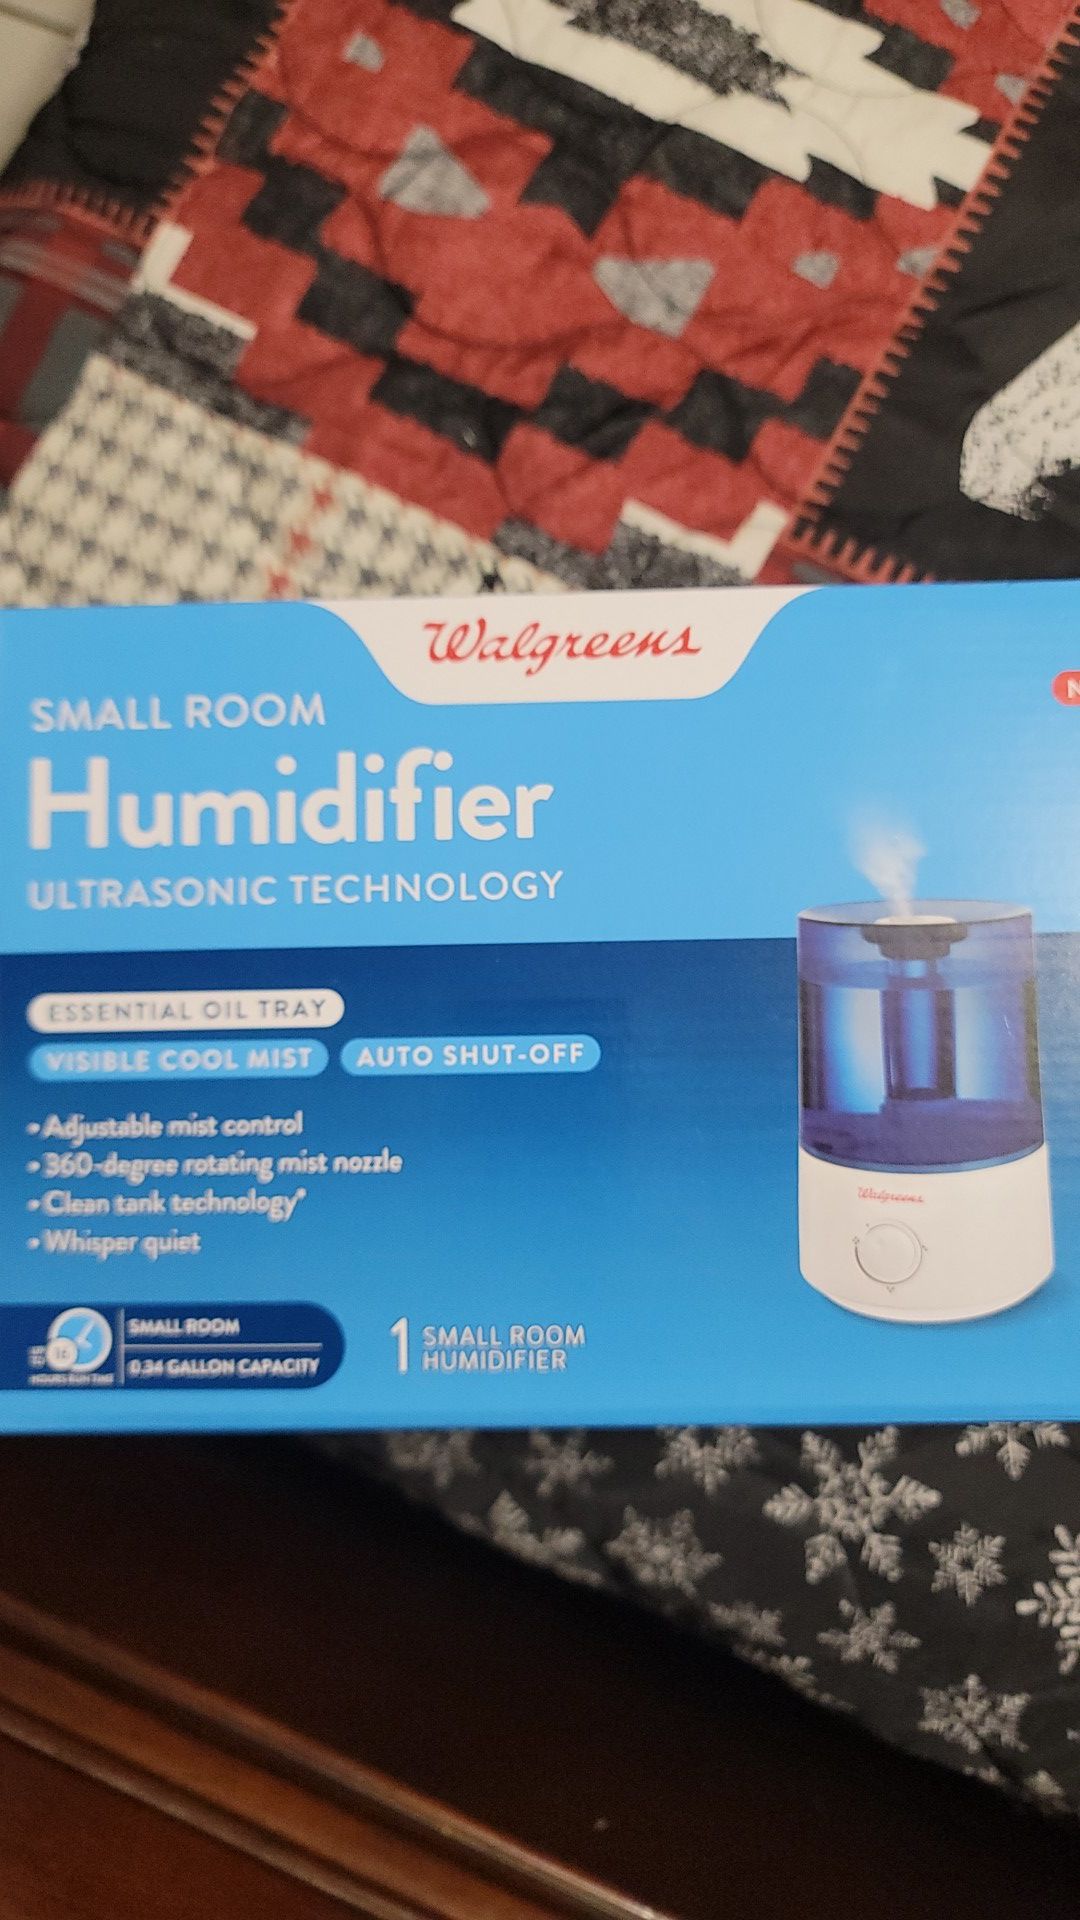 Small Room Humidifier